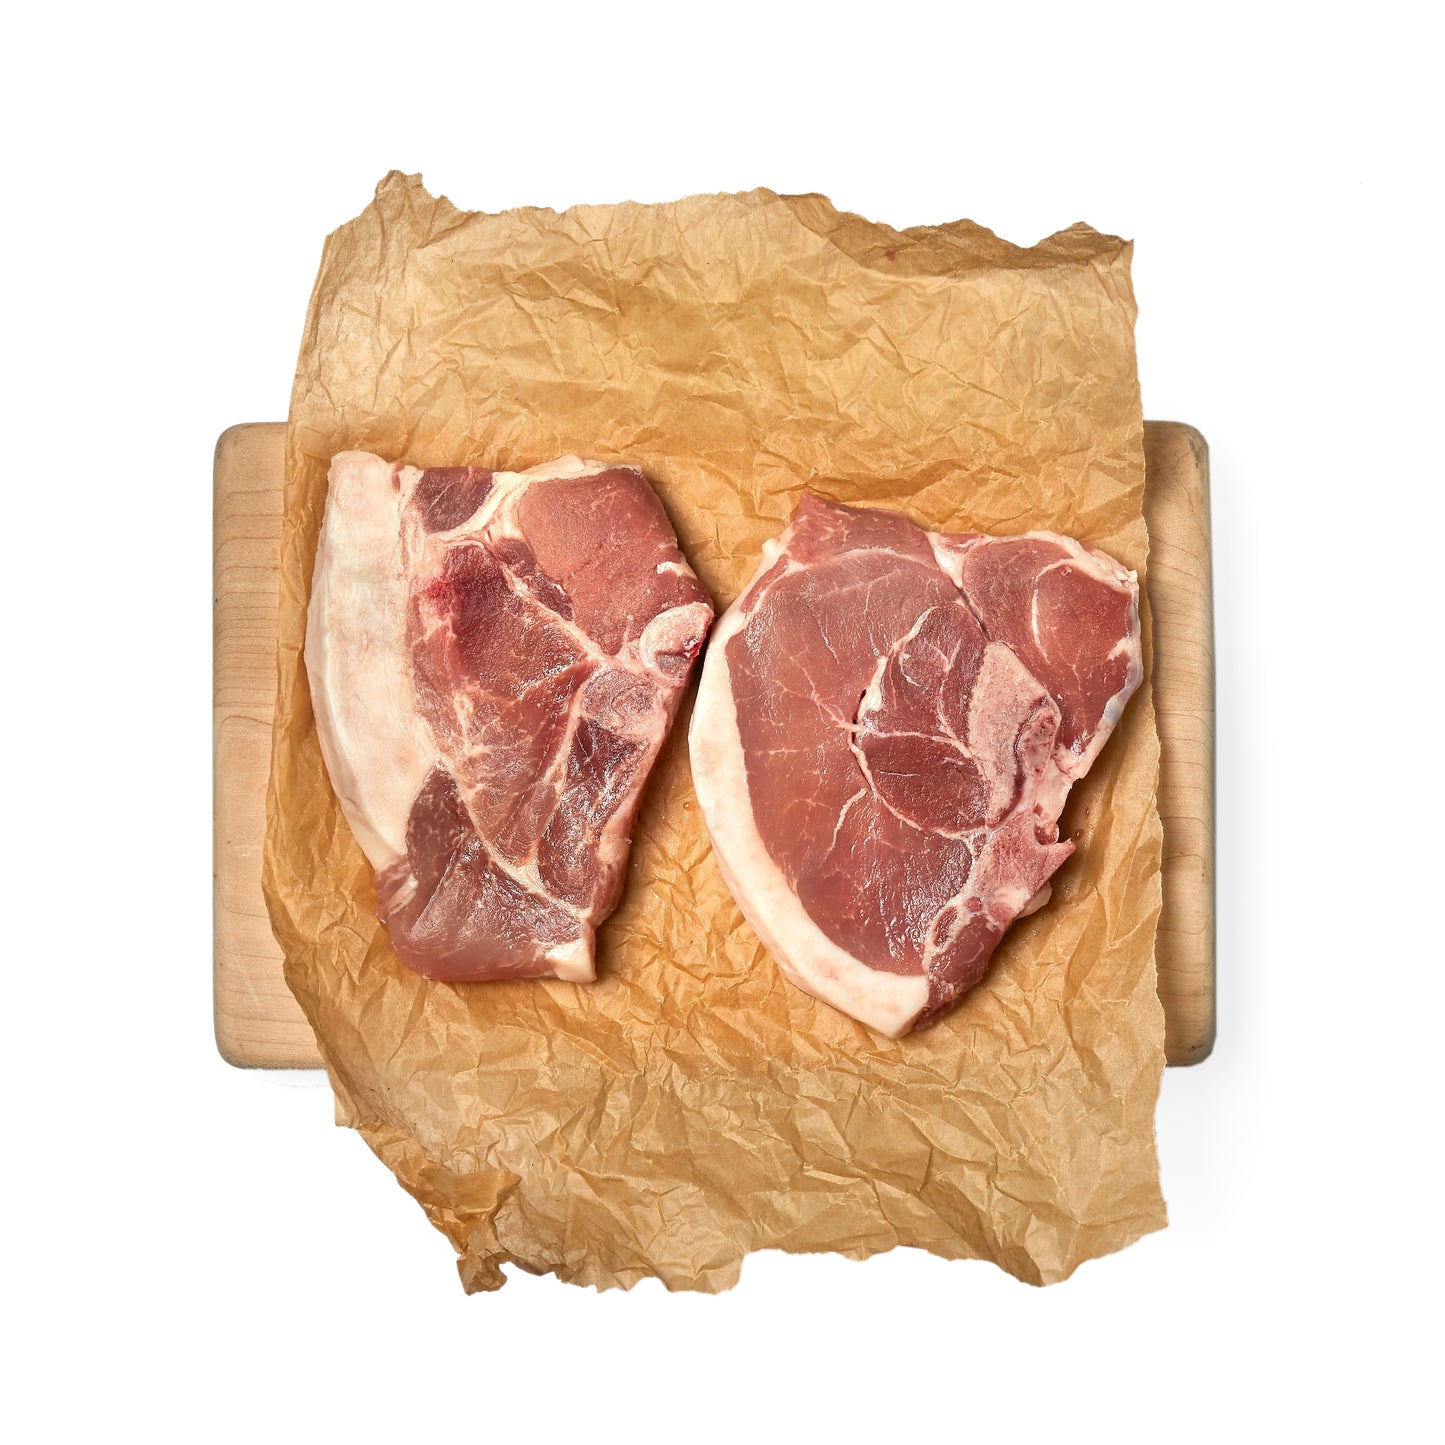 azuluna foods Premium Pasture-Raised Farm Fresh pork Box